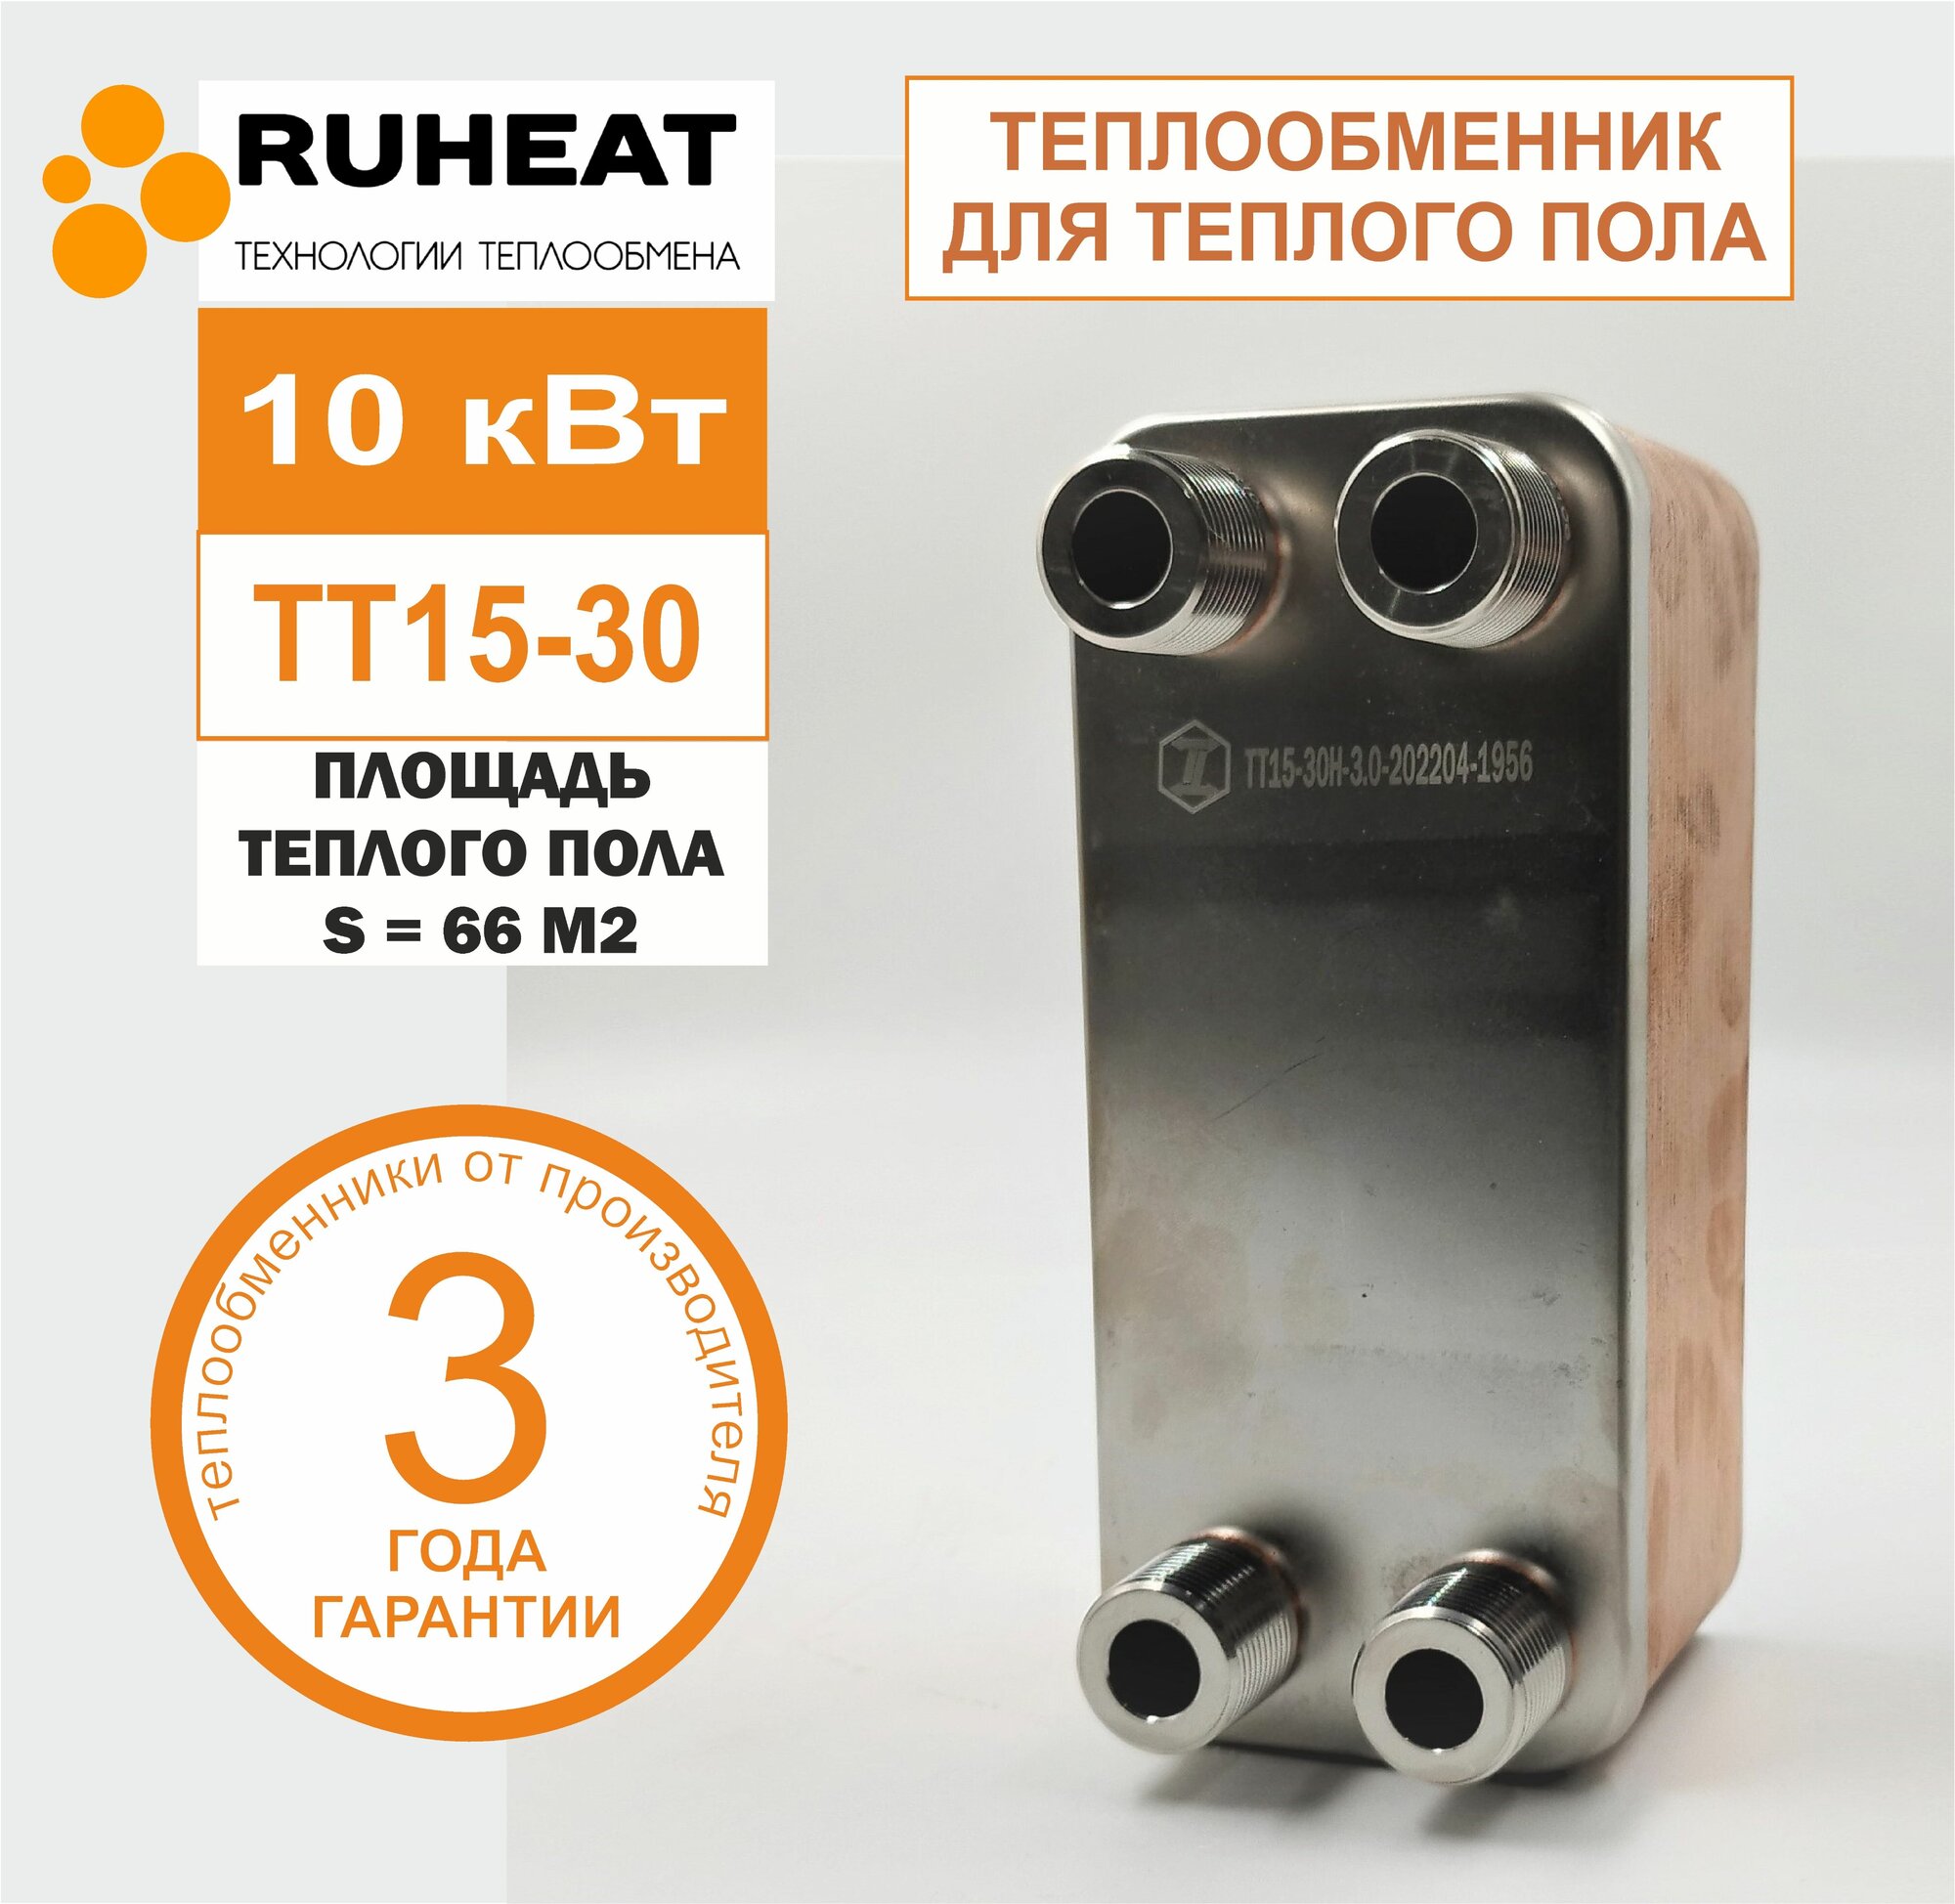 Паяный Теплообменник ТТ15-30 для теплого пола, 10 кВт (нерж. сталь) на площадь 66 м2